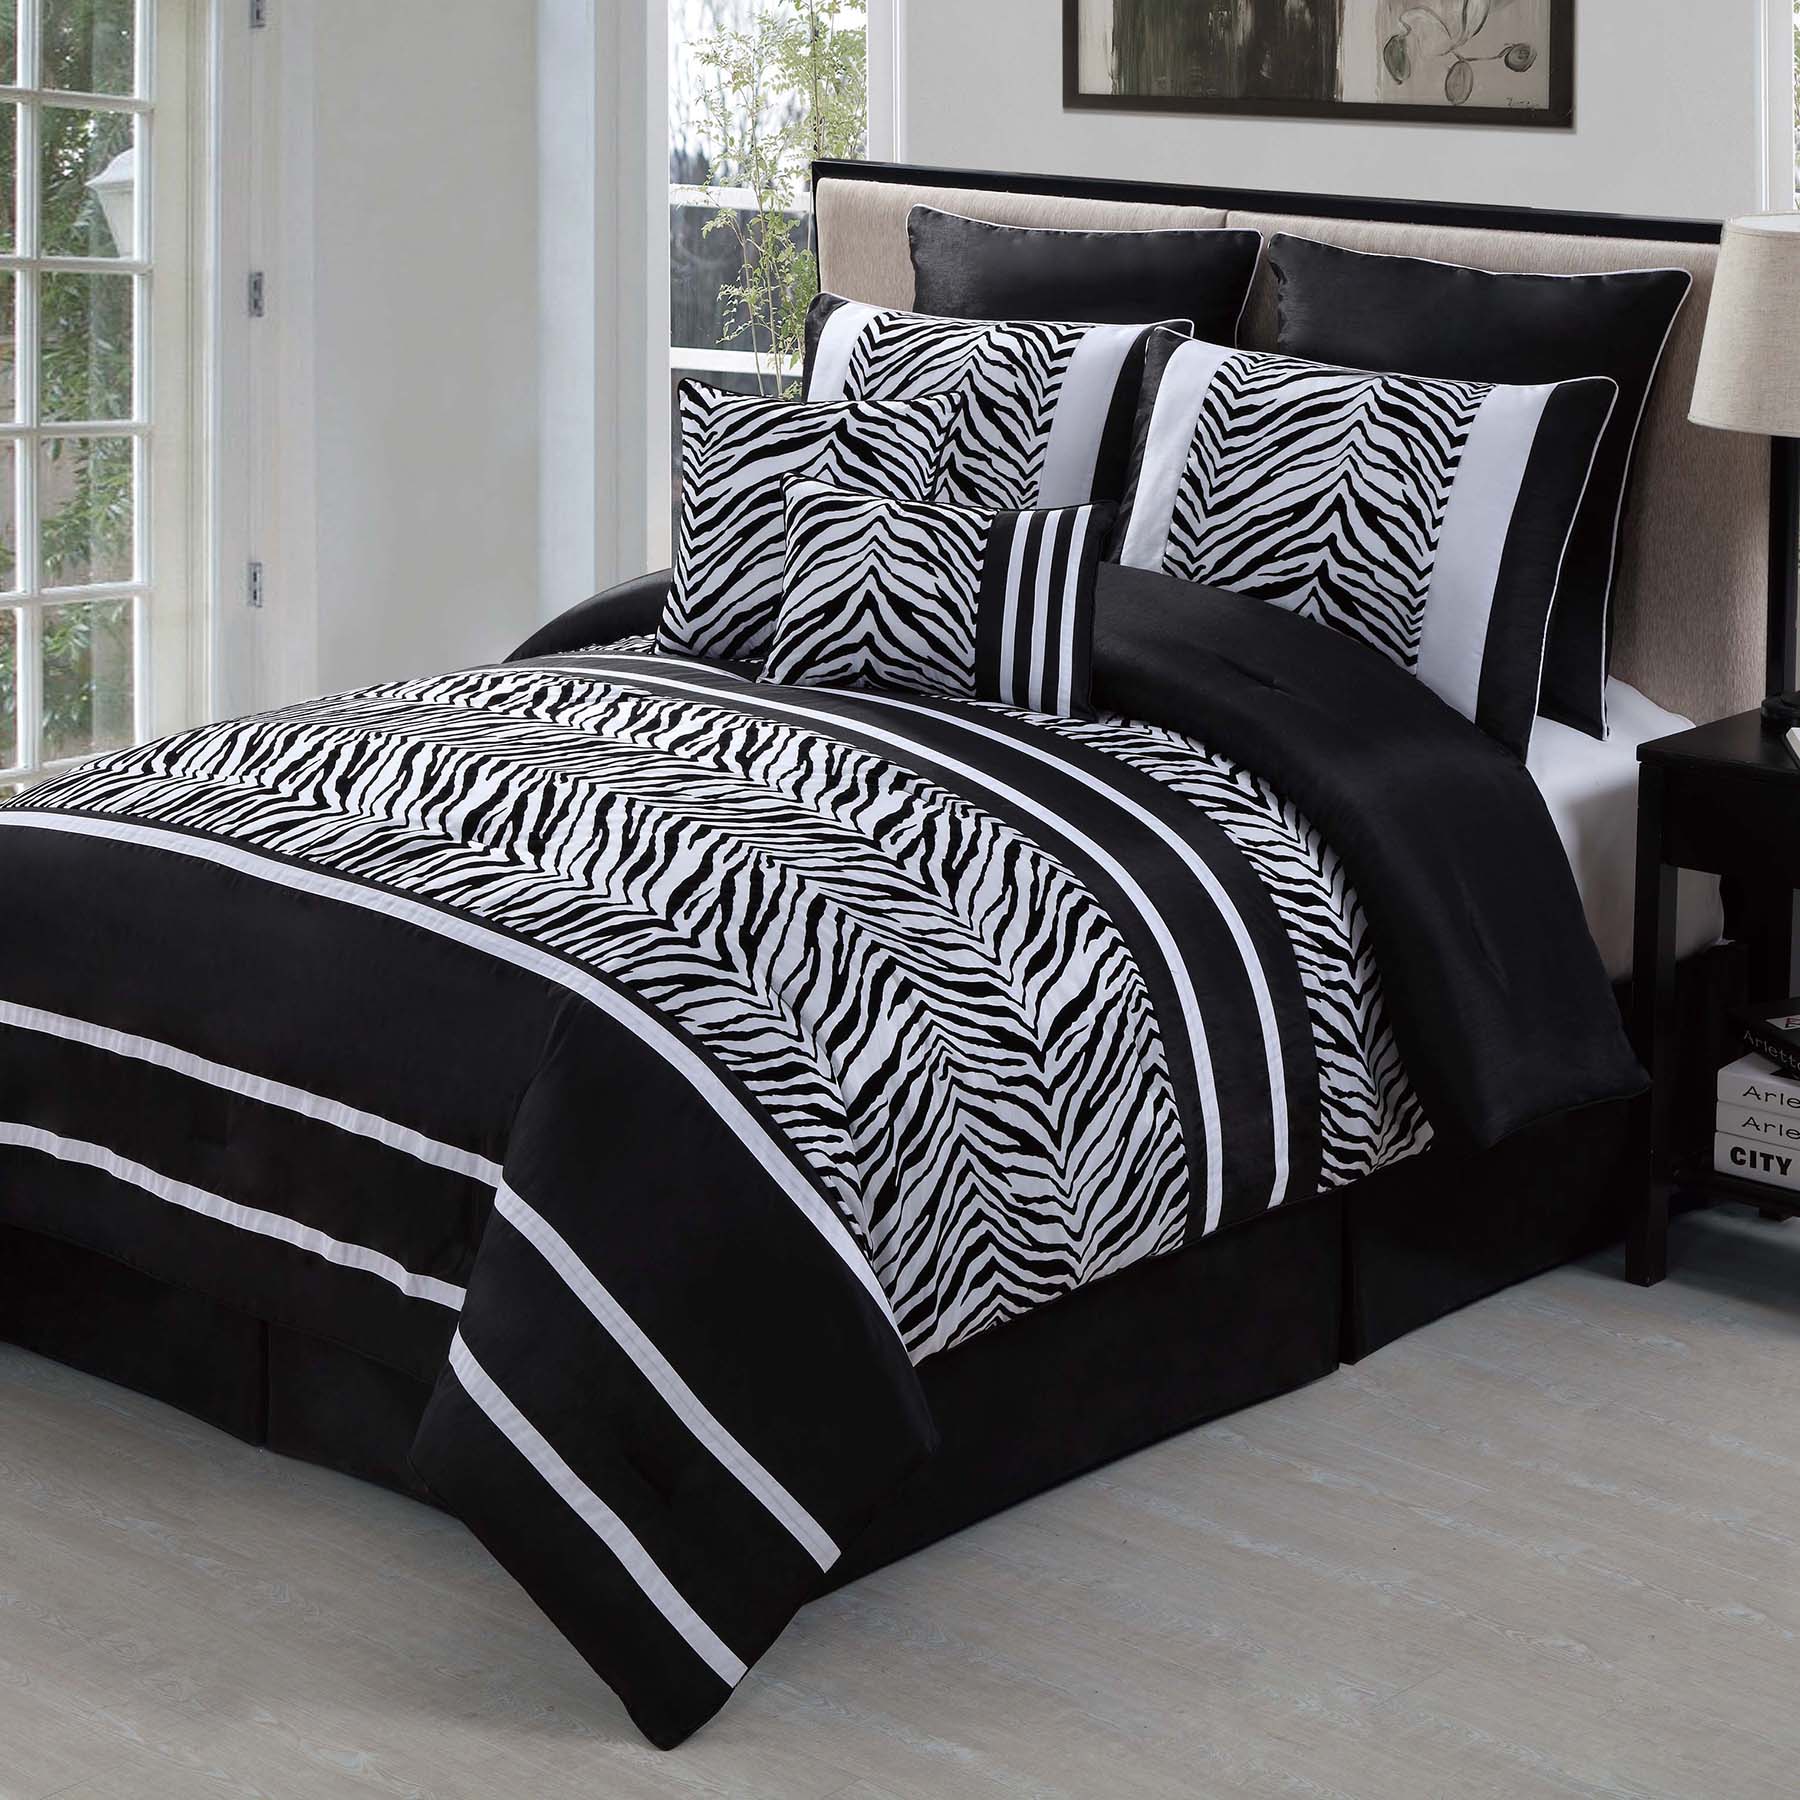 Laken Zebra Comforter Set